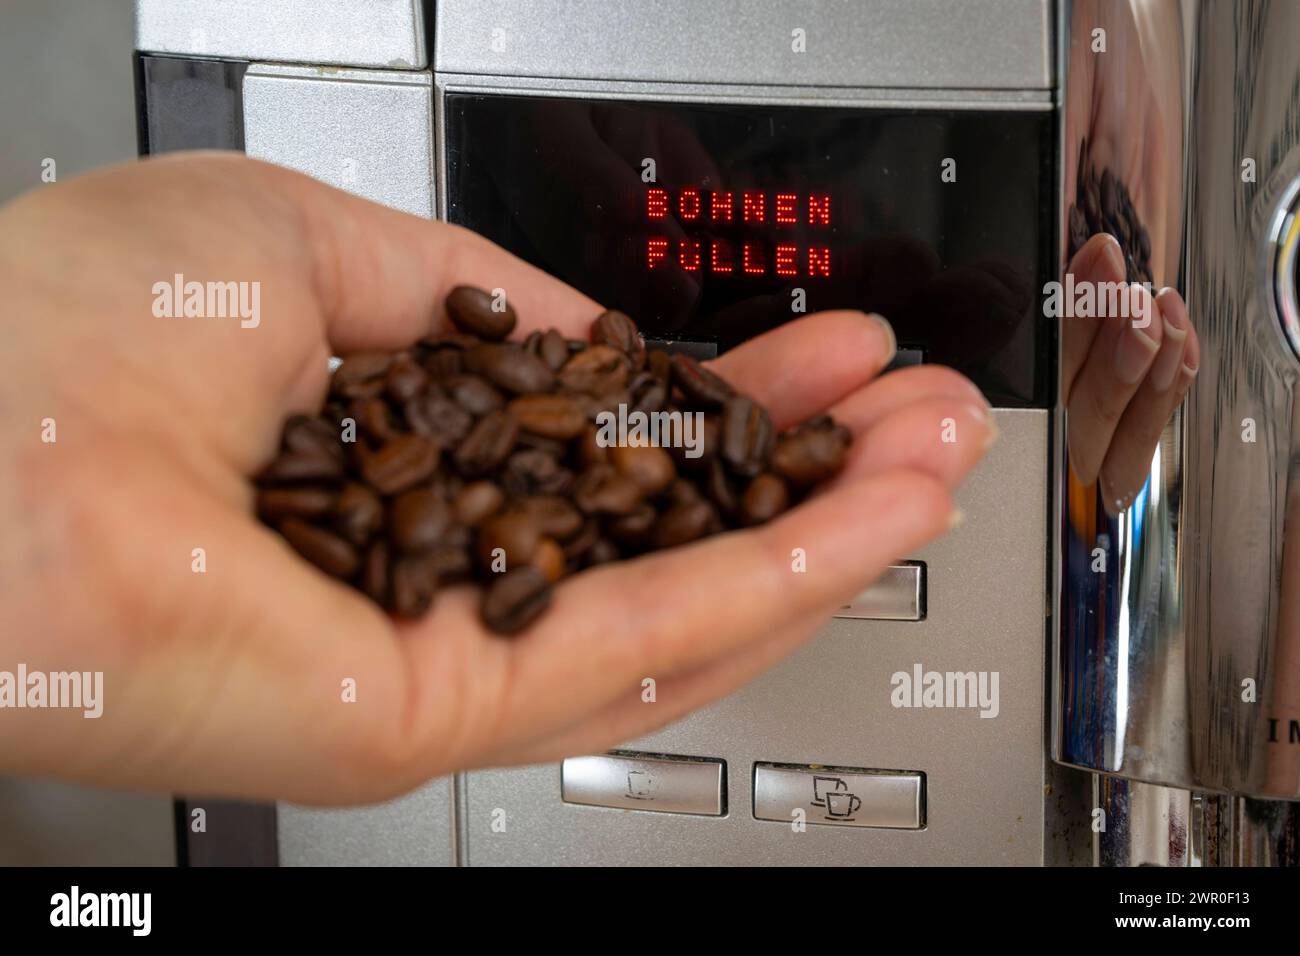 10.03.2024, Symbolbild: Der Kaffee-Preis steigt bald wieder. Kaffeemaschine Fordert BOHNEN FÜLLEN 10.03.2024, Der Kaffee-Preis steigt Cald wieder 10.03.2024, Der Kaffee-Preis steigt Bald wieder *** 10 03 2024, immagine simbolica il prezzo del caffè aumenterà presto di nuovo la macchina del caffè richiede il RIEMPIMENTO DEI RUBINETTI 10 03 2024, il prezzo del caffè aumenterà presto di nuovo 10 03 2024, il prezzo del caffè aumenterà presto di nuovo Foto Stock